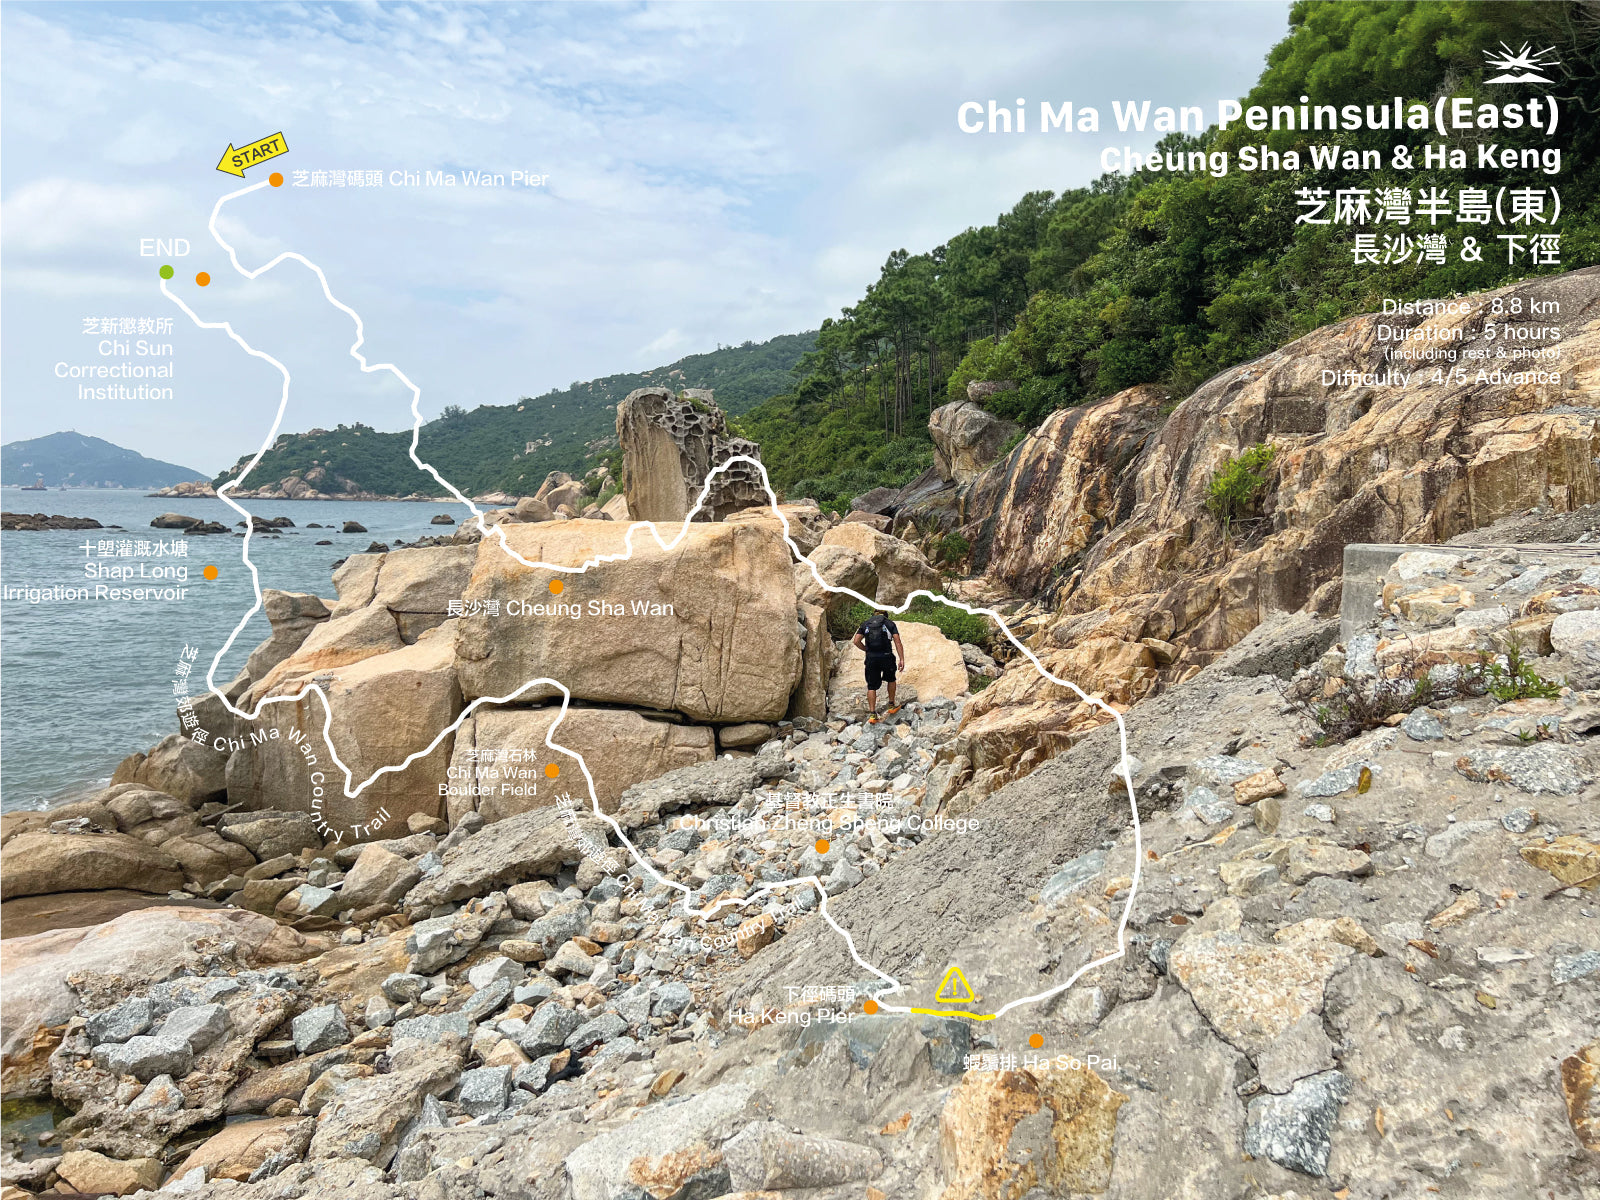 Chi Ma Wan Peninsula (East) | Cheung Sha Wan & Ha Keng